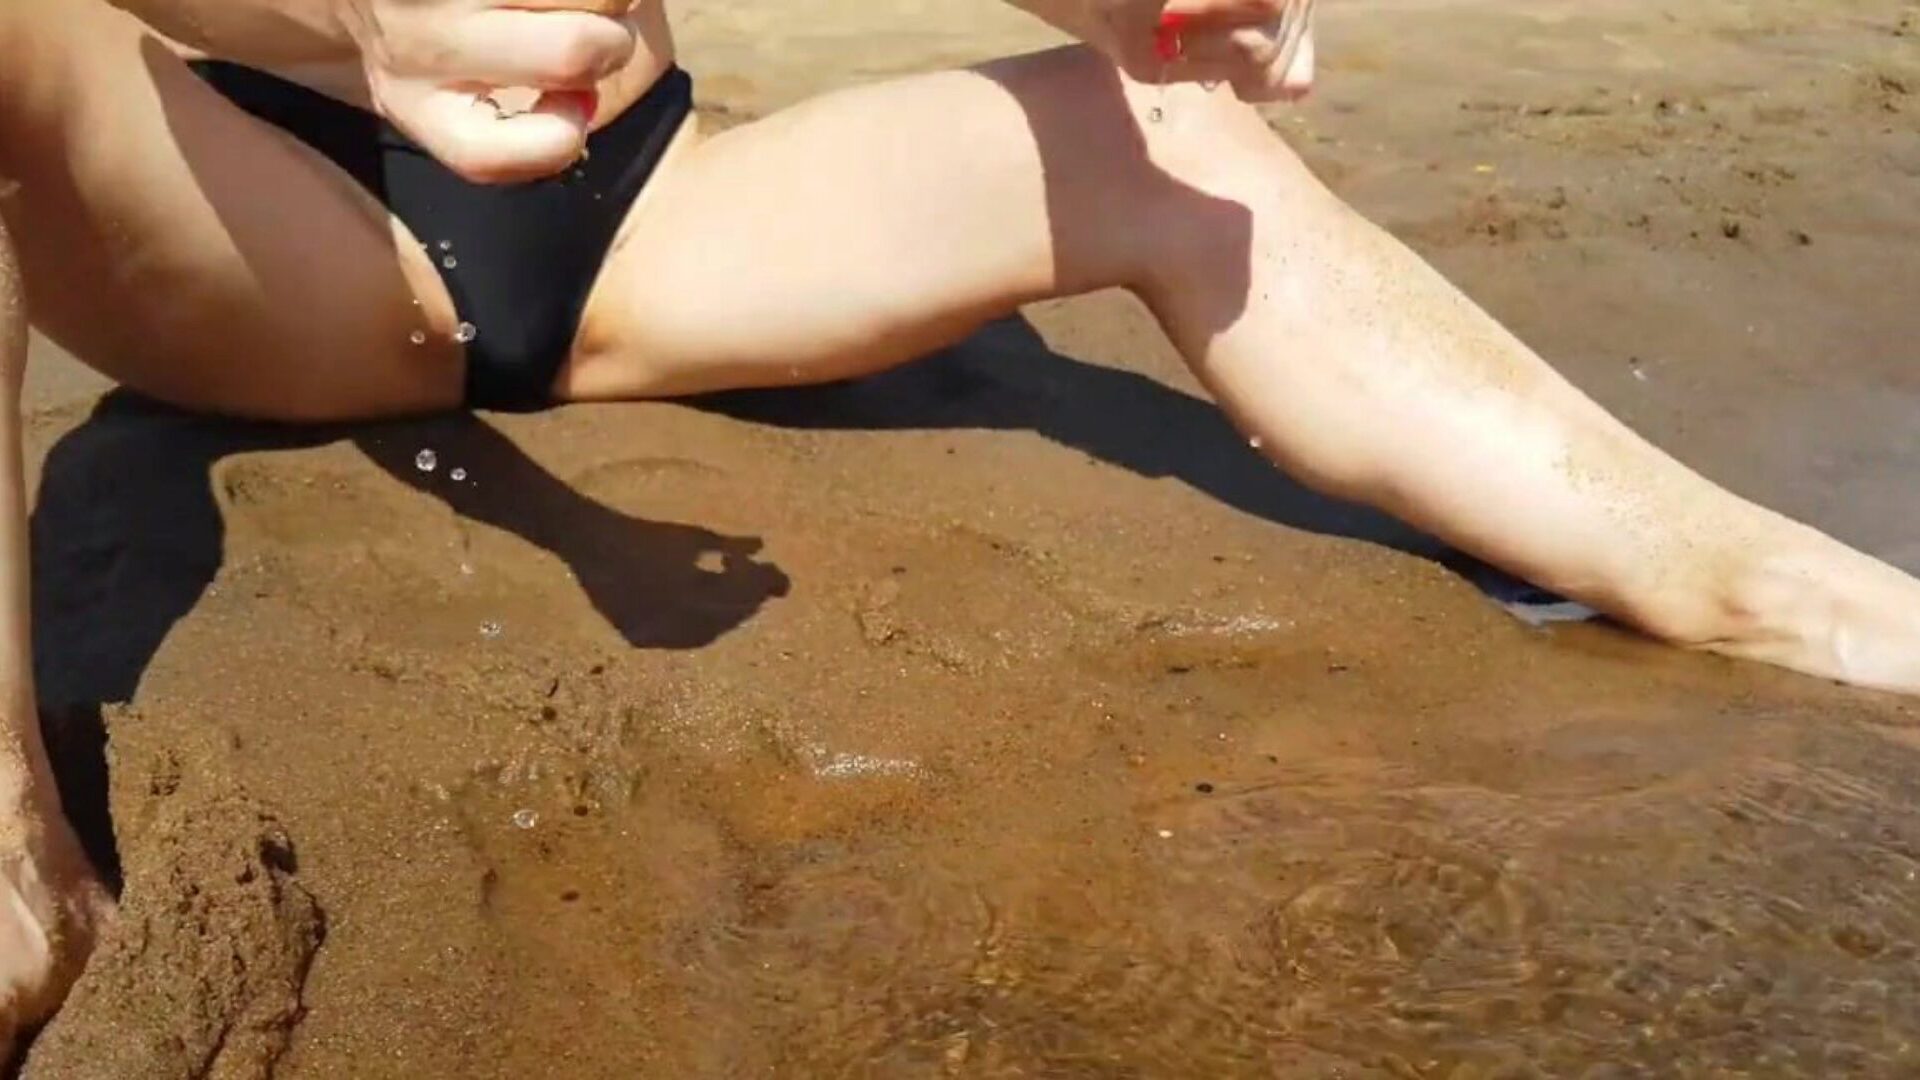 έφηβος δάχτυλο σε μια δημόσια παραλία και παίρνει έναν πραγματικό δροσερό οργασμό - σφιχτό μουνί playkitty ultra hd 4k